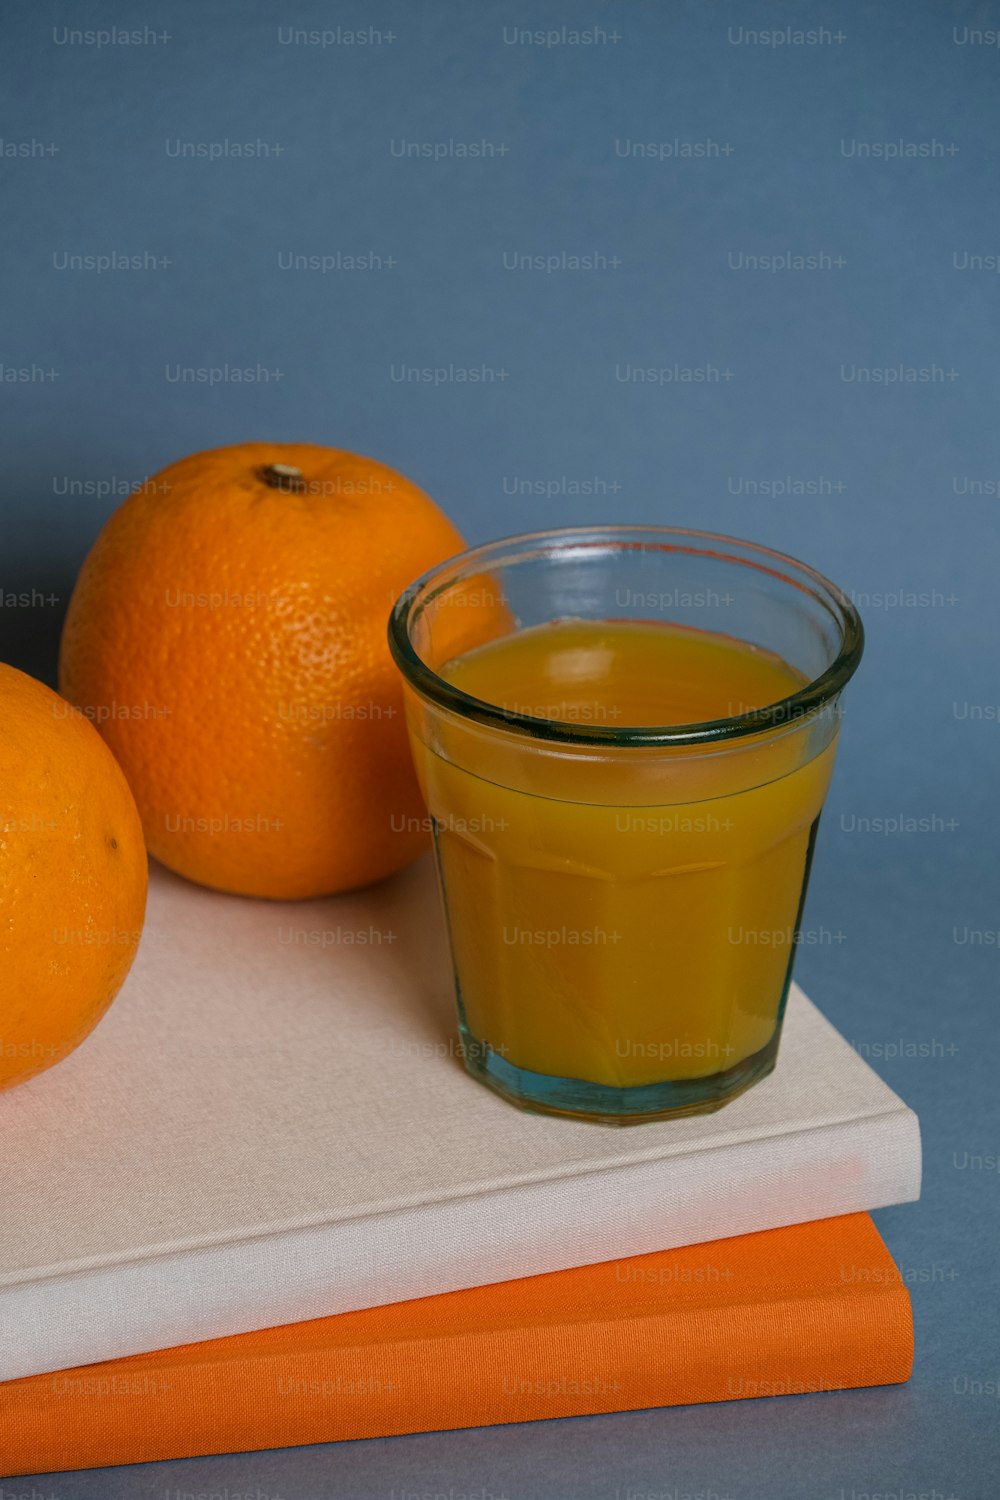 오렌지 두 개 옆에 오렌지 주스 한 잔